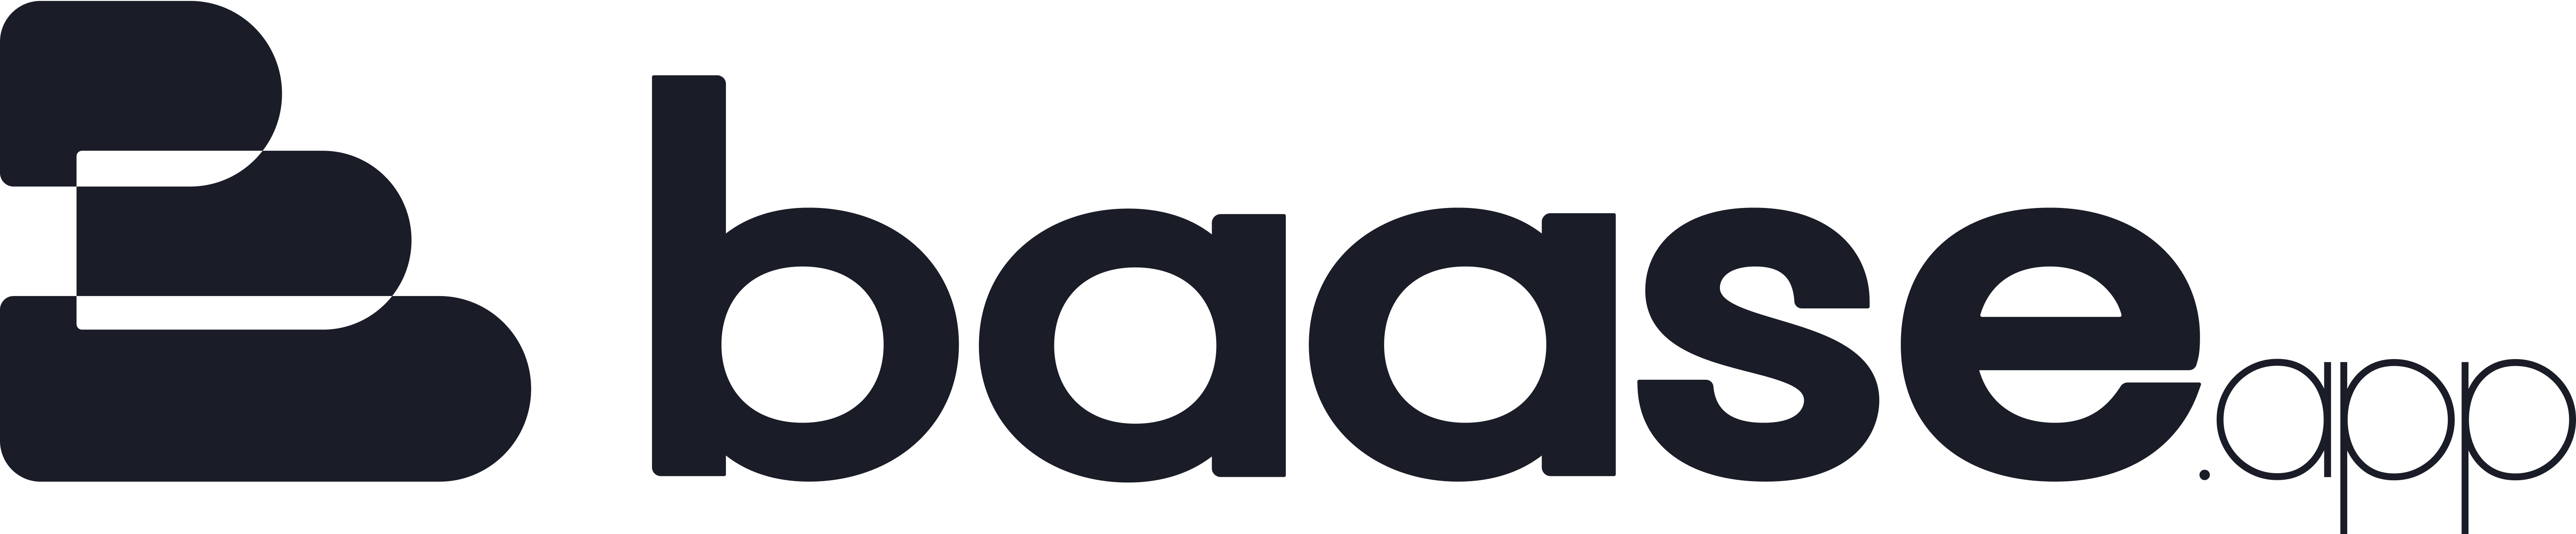 Baase light logo